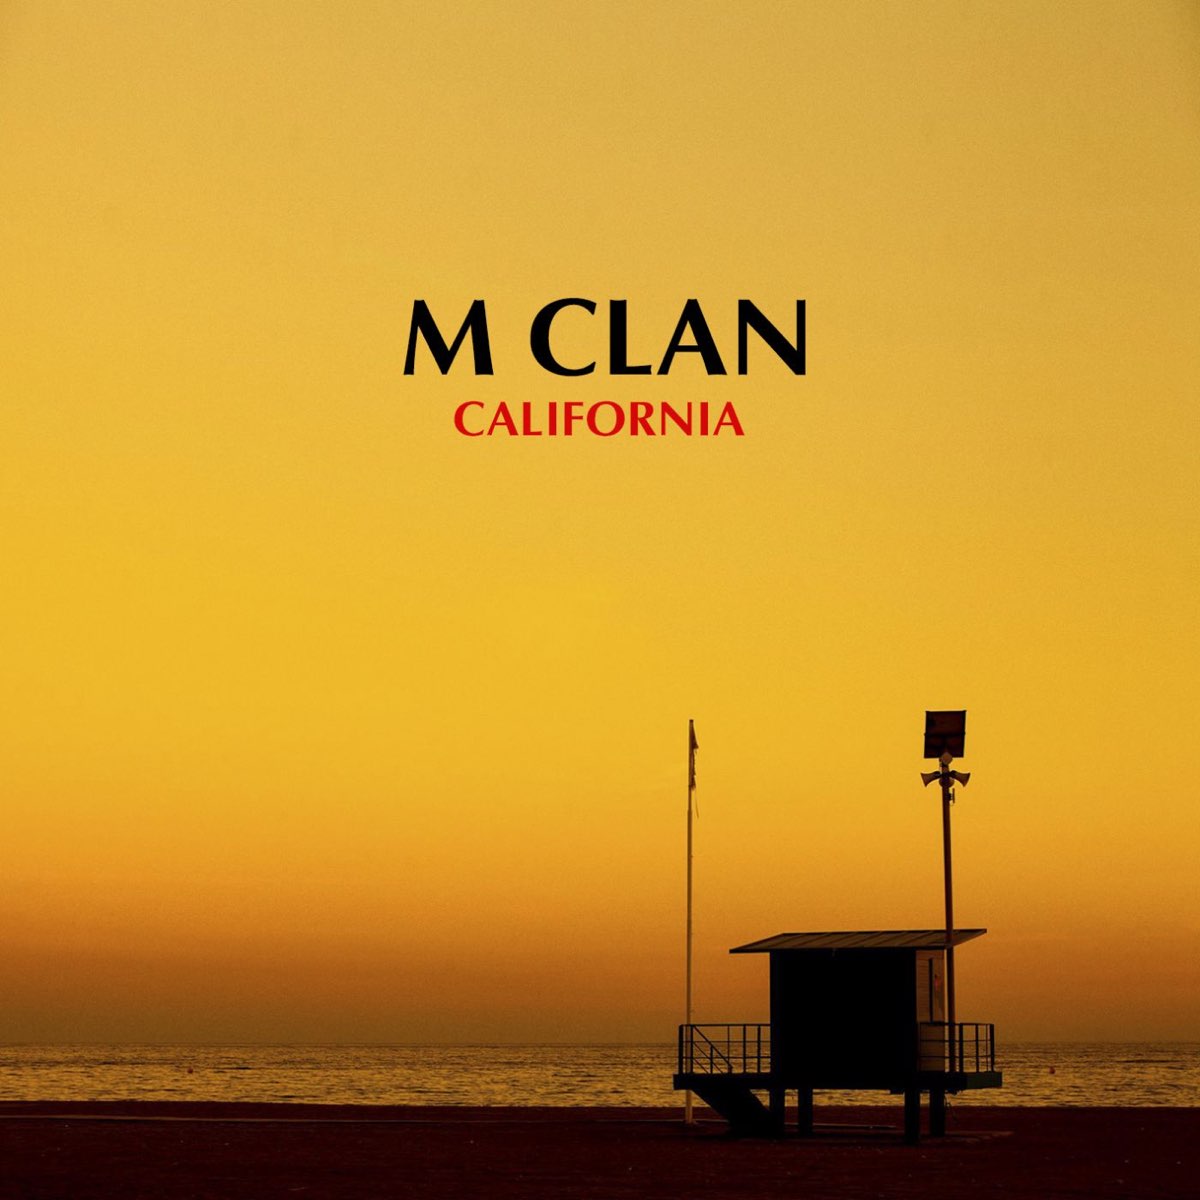 M clan. California Clan. California Song. California песня. Песни про Калифорнию.